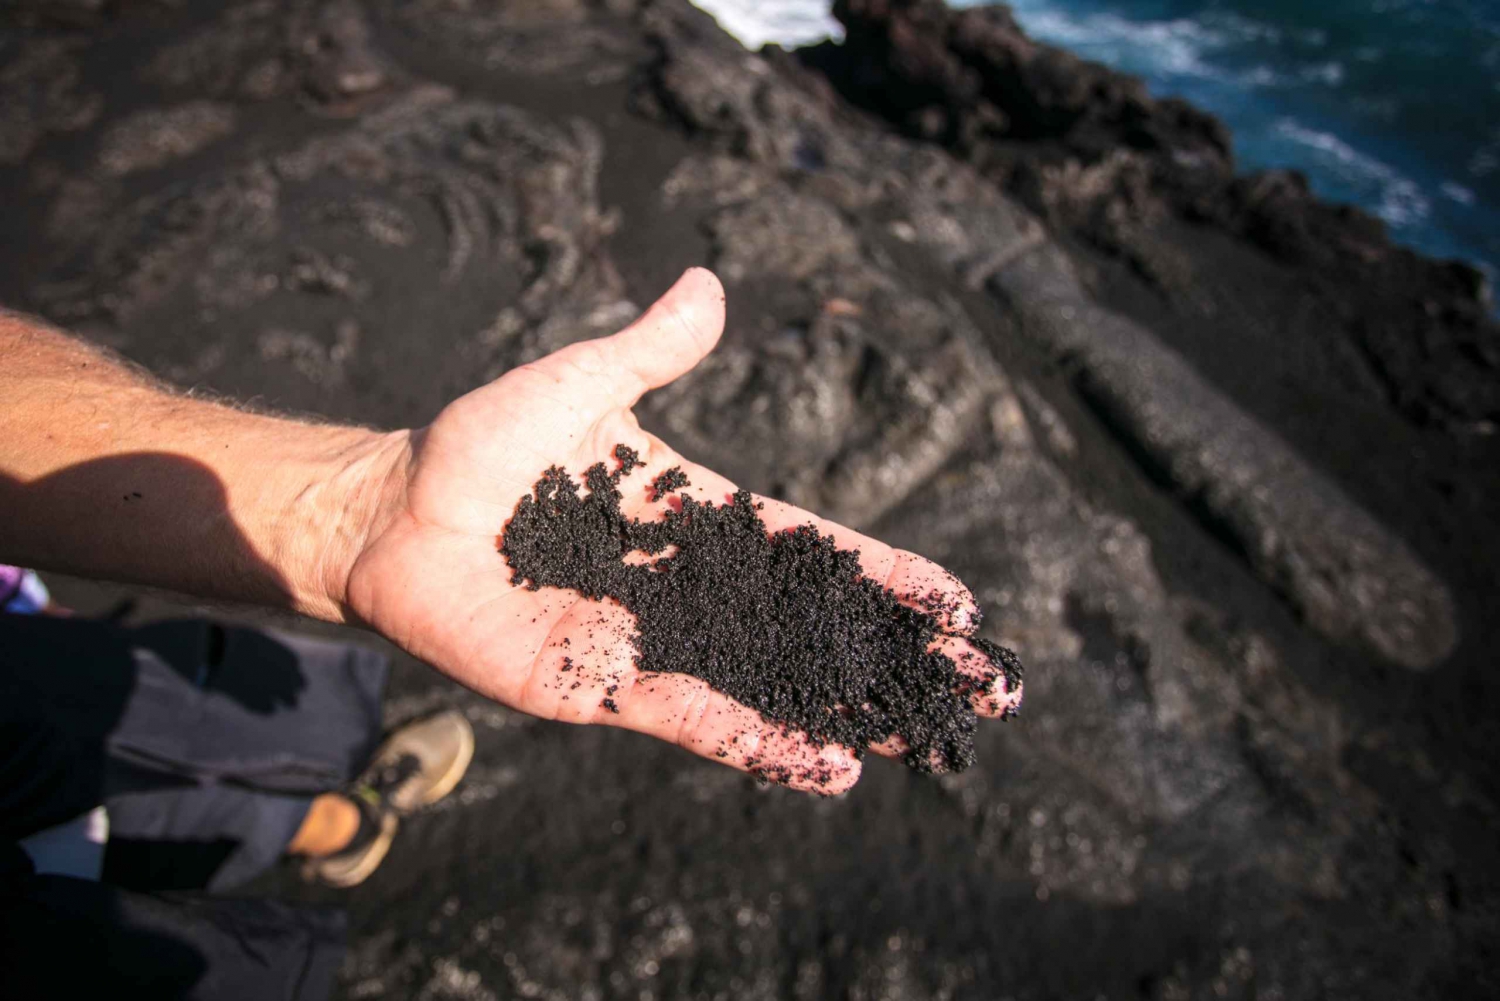 Waikoloa/Kohala: Elite vulkaanwandeling